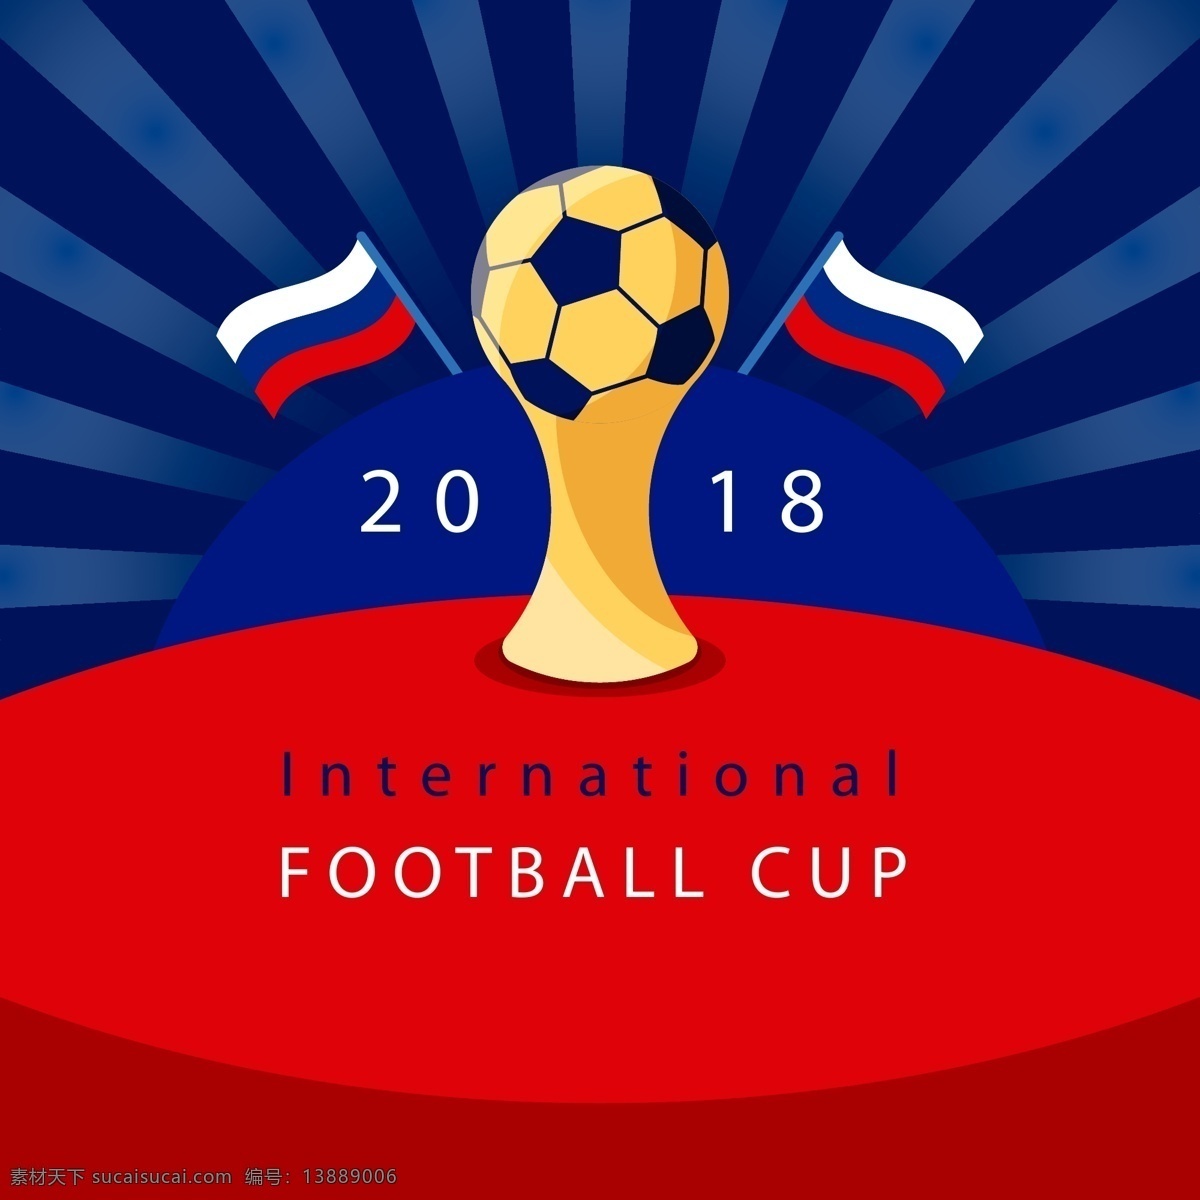 创意 足球 2018 世界杯 元素 足球世界杯 激情世界杯 嘉年华 英文 俄罗斯世界杯 足球赛 足球季 球赛 世界杯足球赛